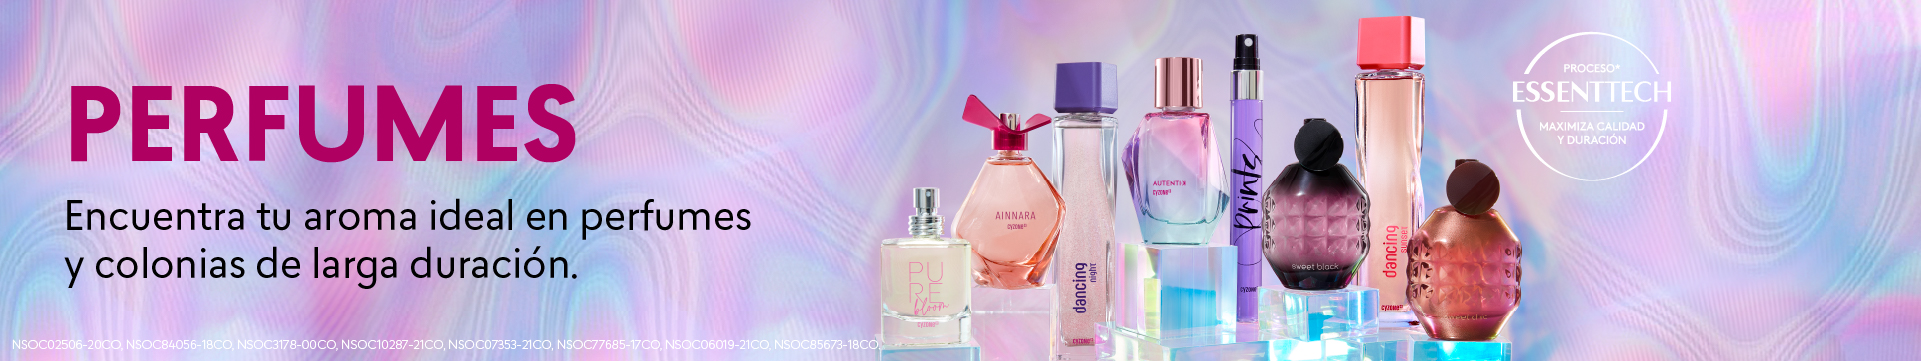 perfumes y colonias de mujer con aromas de larga duración